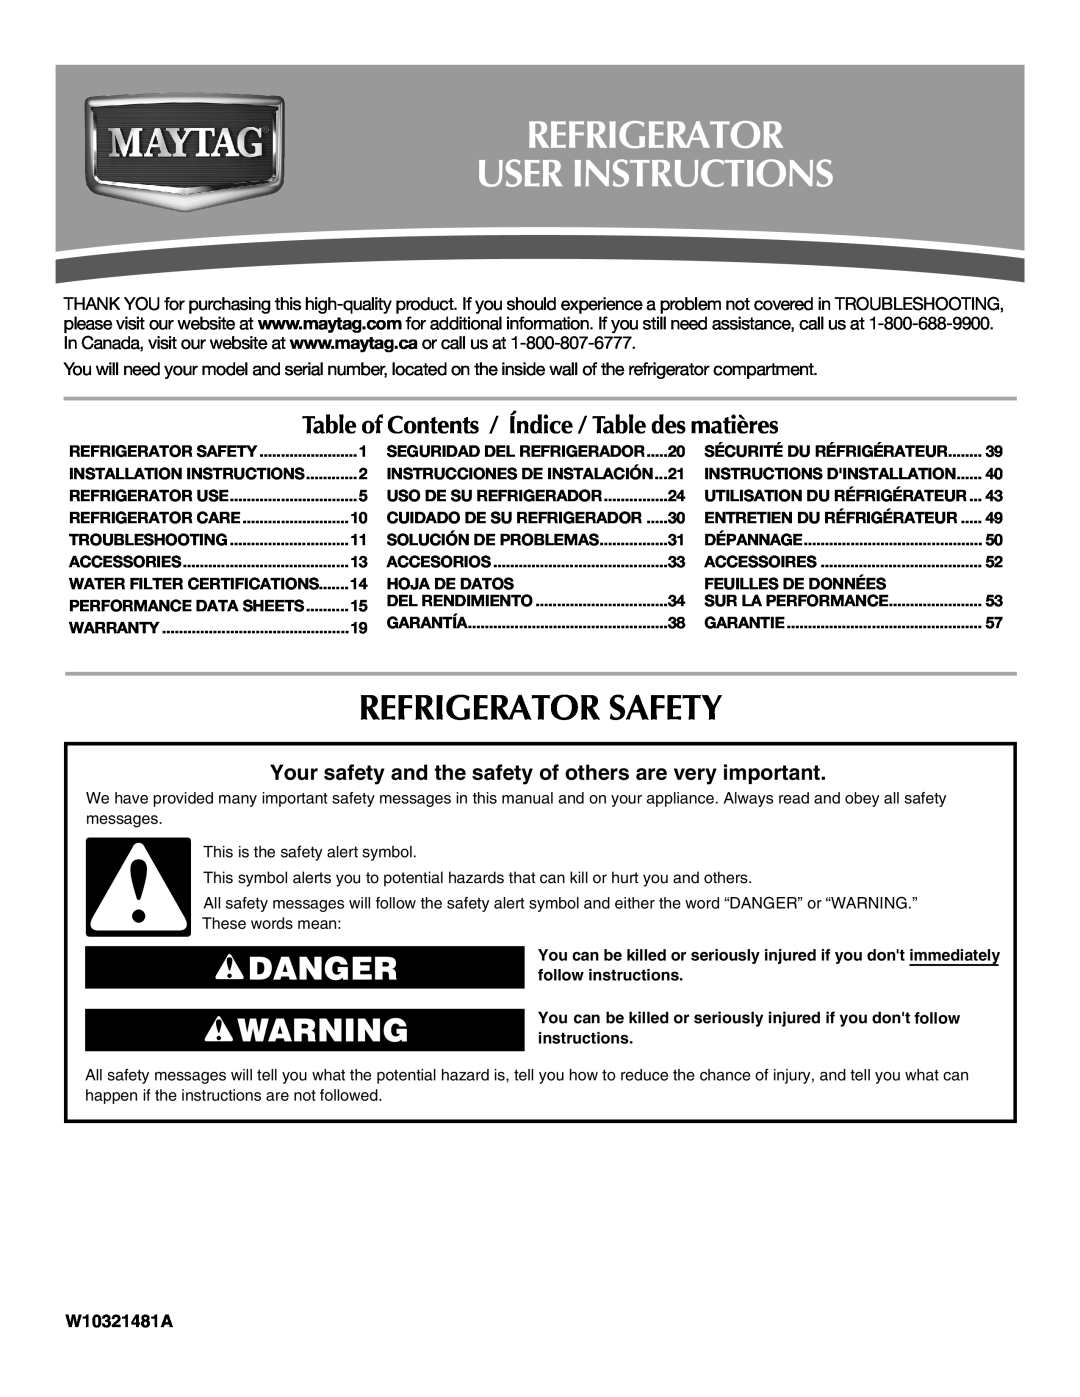 Maytag W10321481A installation instructions Refrigerator User Instructions, Refrigerator Safety, Danger 